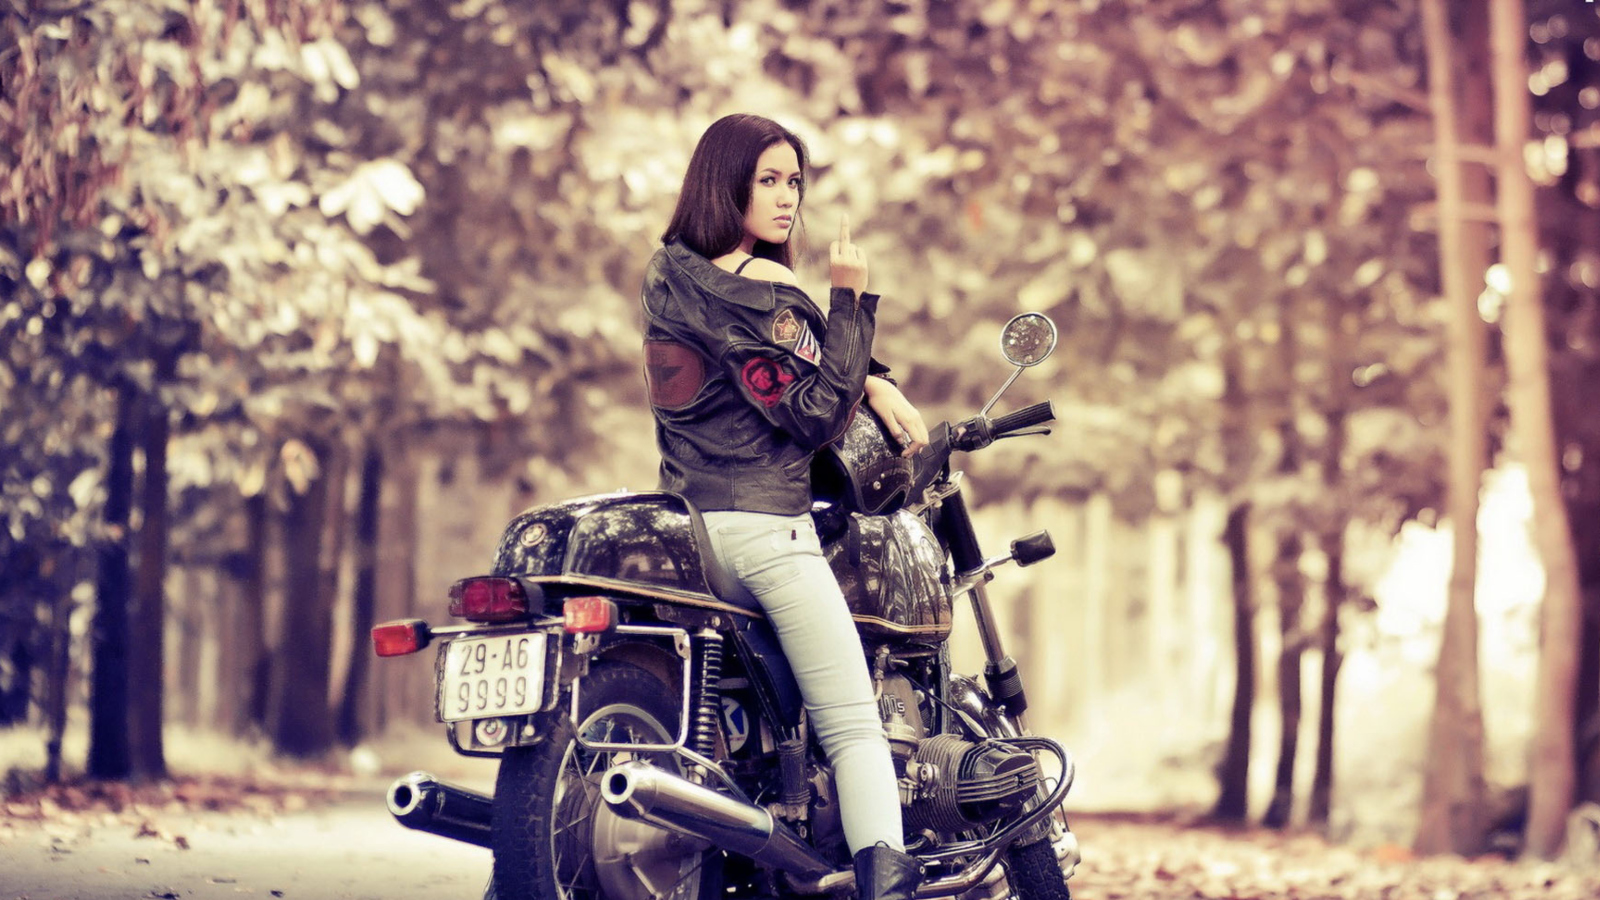 Moto Girl wallpaper 1600x900